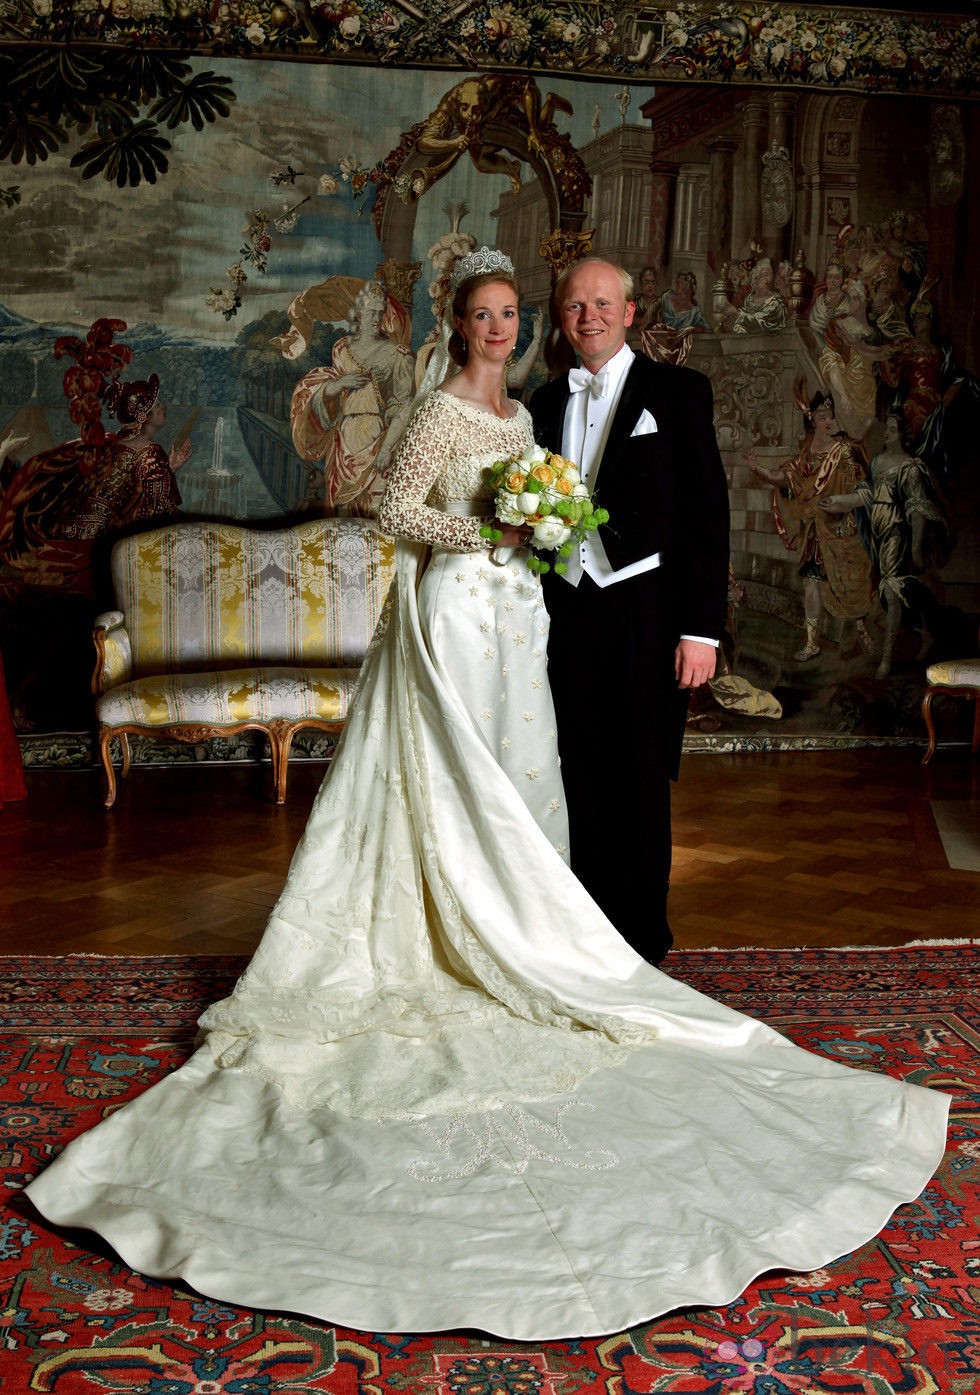 La Princesa Natalia y Alexander Johannsman posan tras casarse